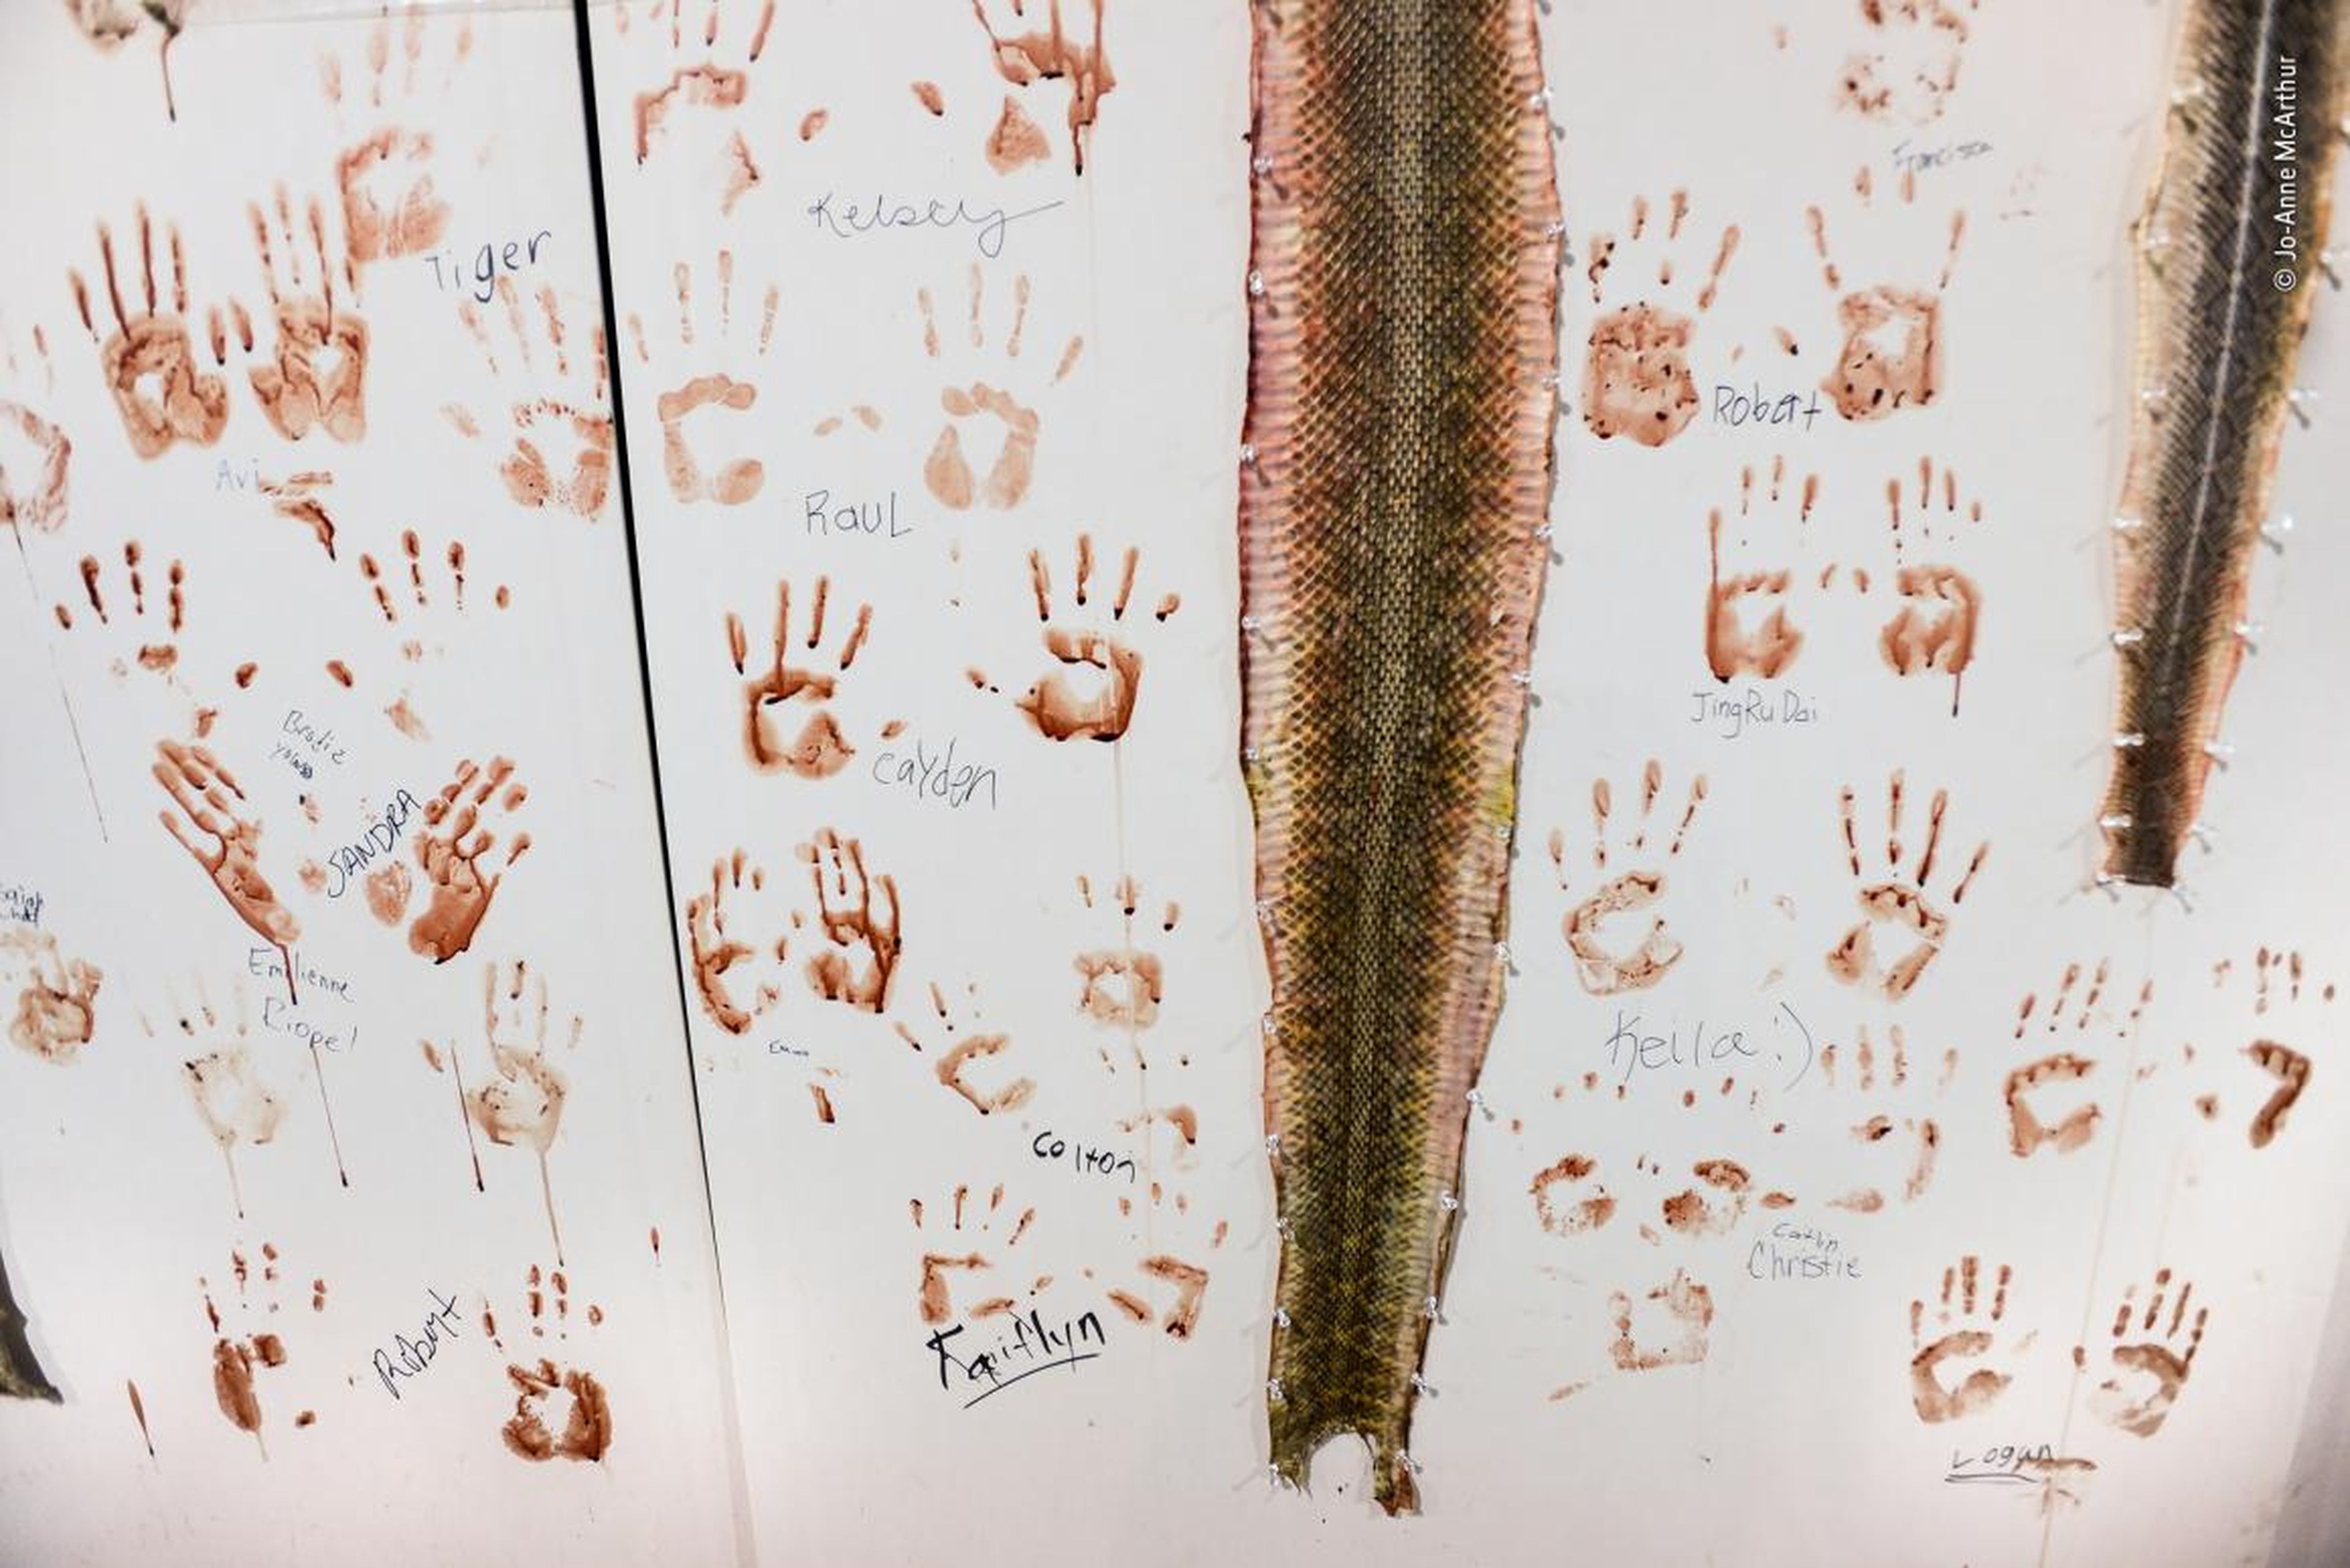 Estas pieles de serpientes de cascabel están clavadas a una pared blanca en Sweetwater, Texas.